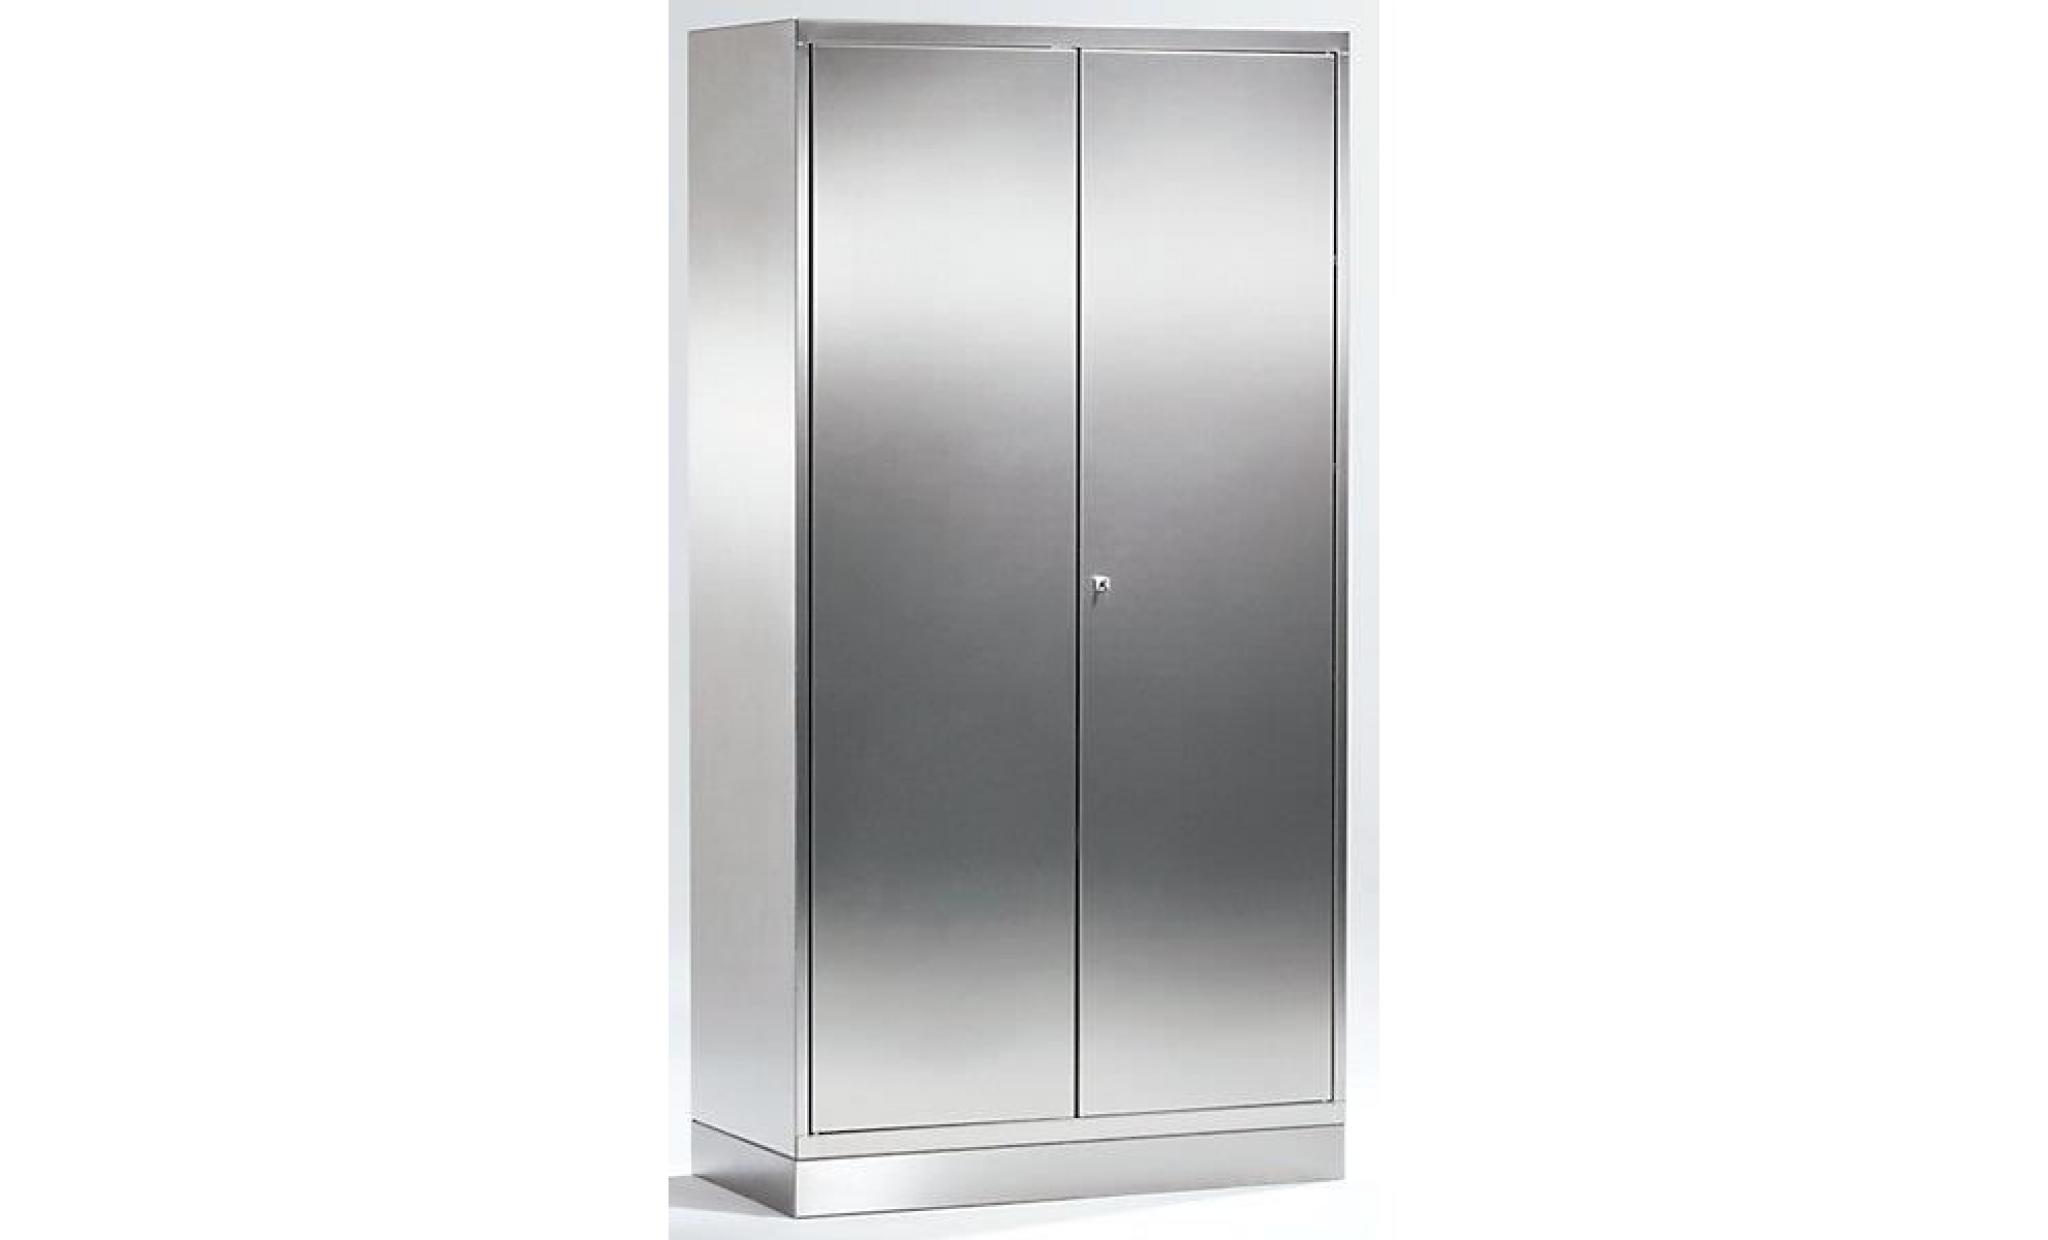 armoire universelle en inox   armoire à portes battantes h x l x p 1950 x 1000 x 500 mm   armoire armoire de vestiaire armoire pas cher